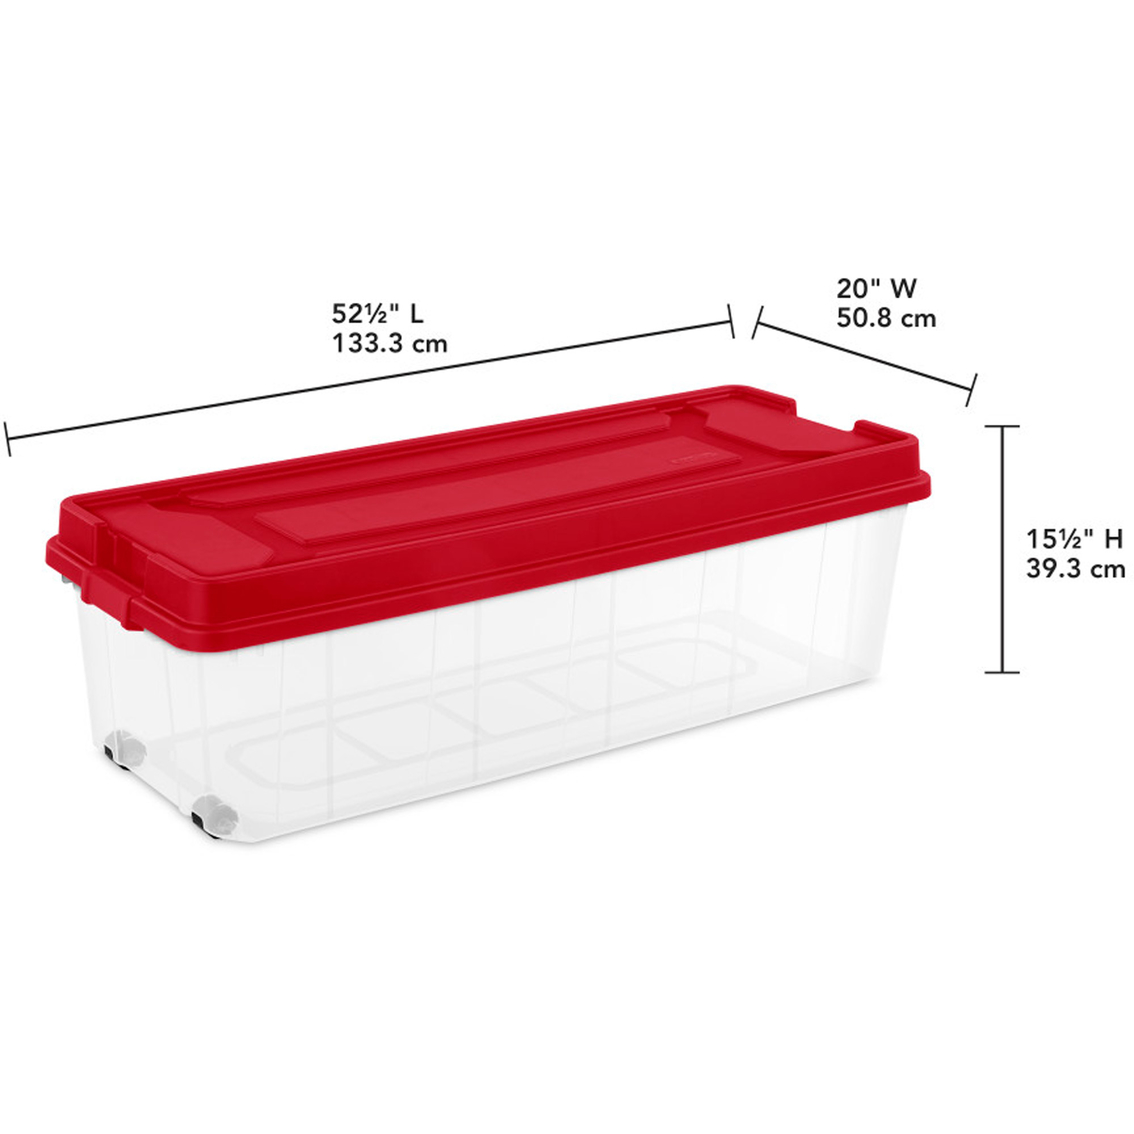 Sterilite Ornament Storage Box w/ 20 Adjustable Compartments, Red